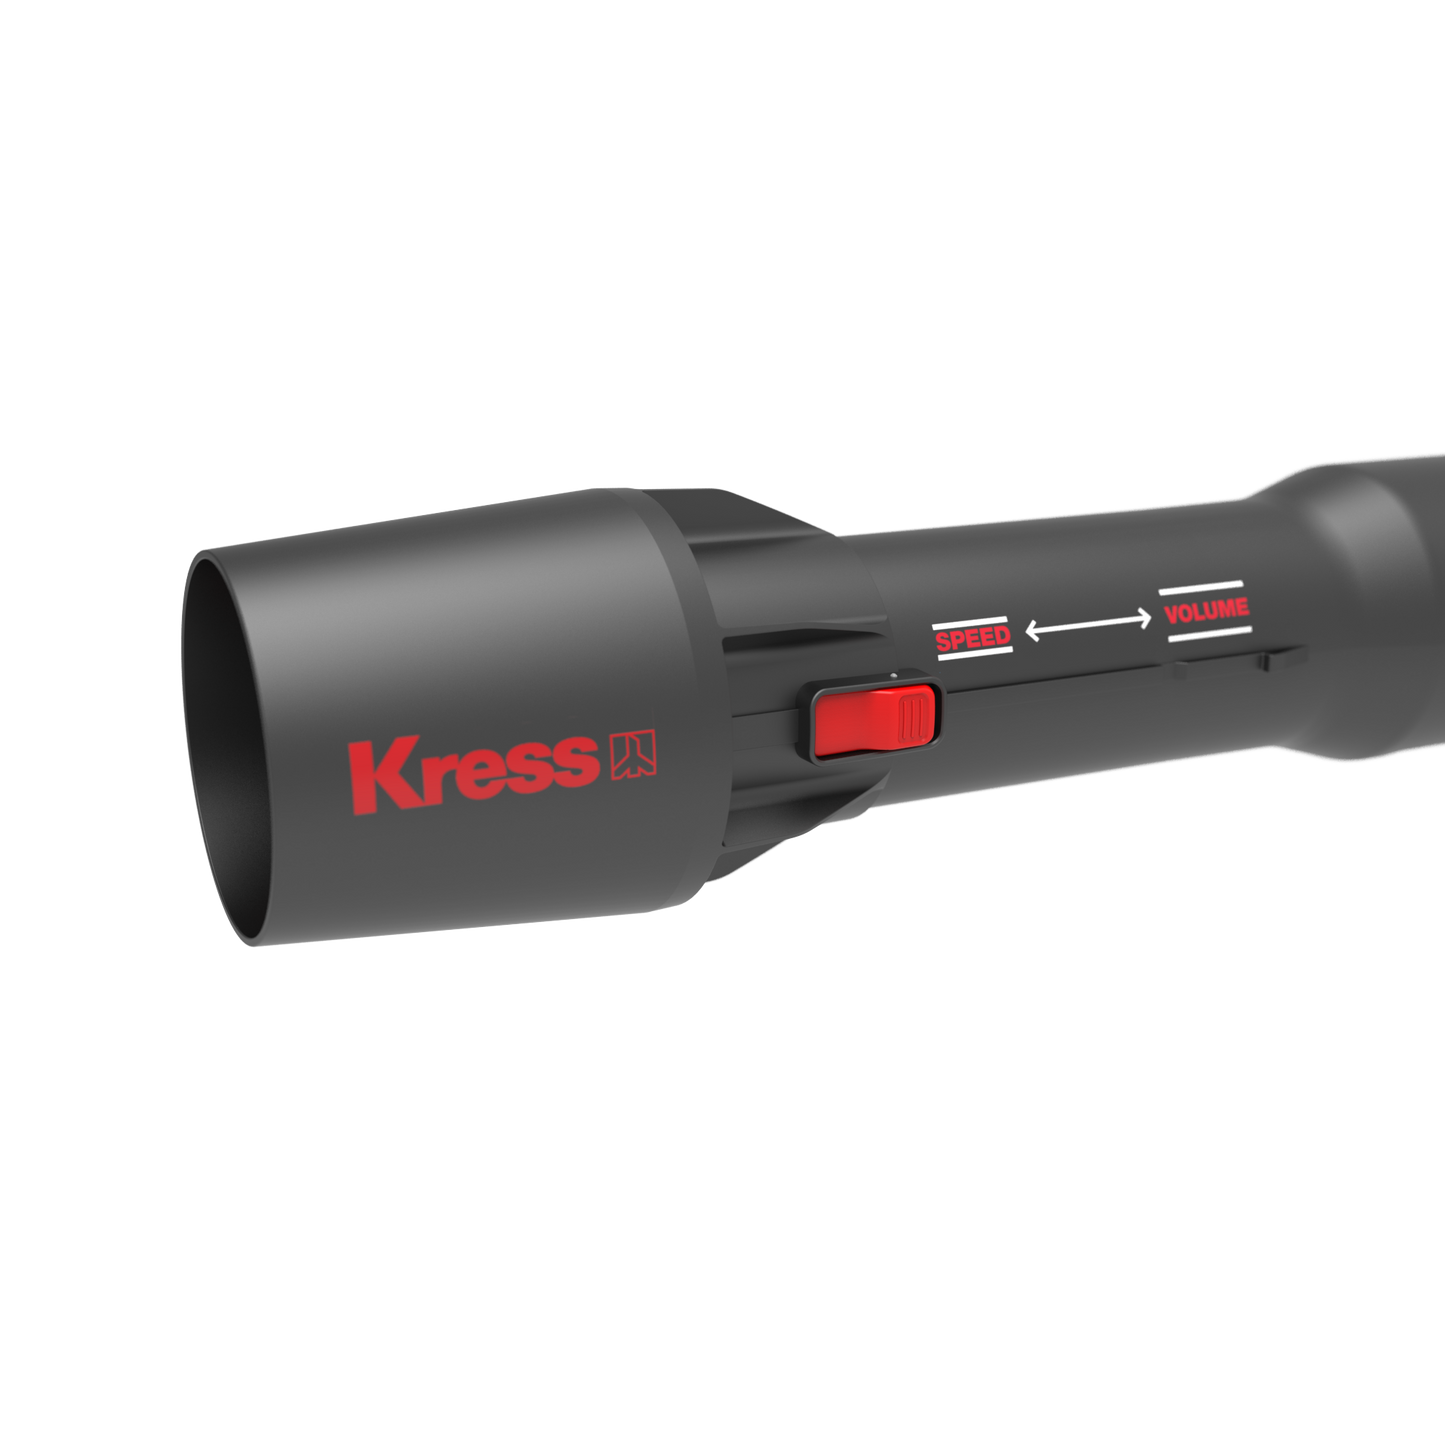 Kress KG560E Blower 